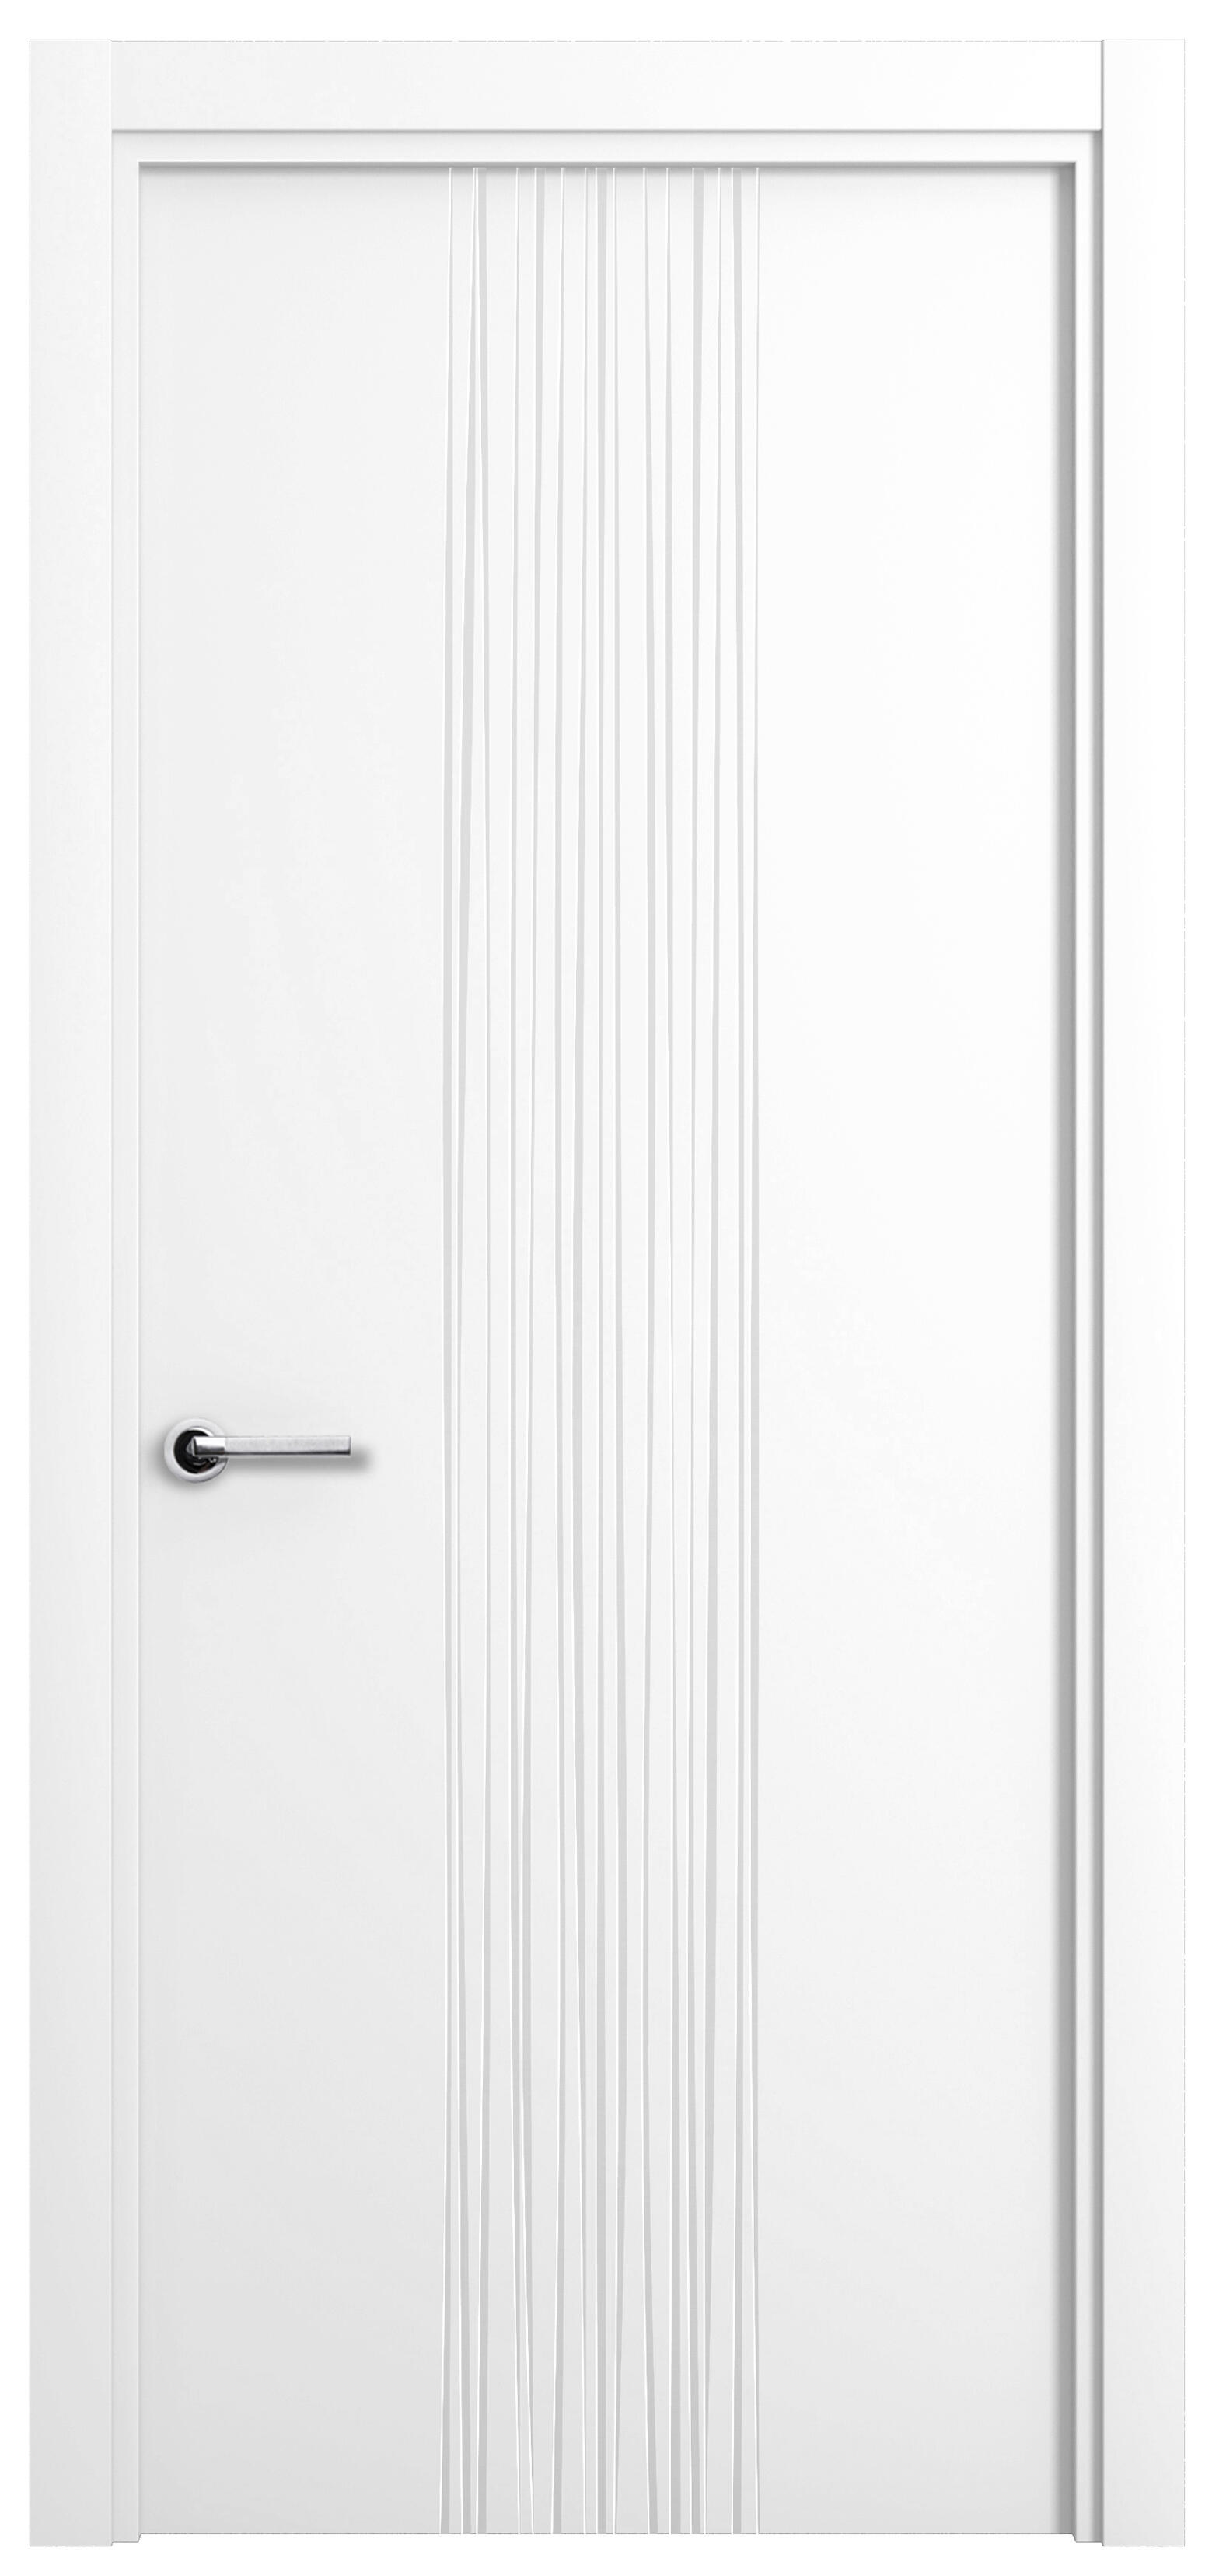 Puerta quevedo premium blanco apertura derecha 9x82.5cm